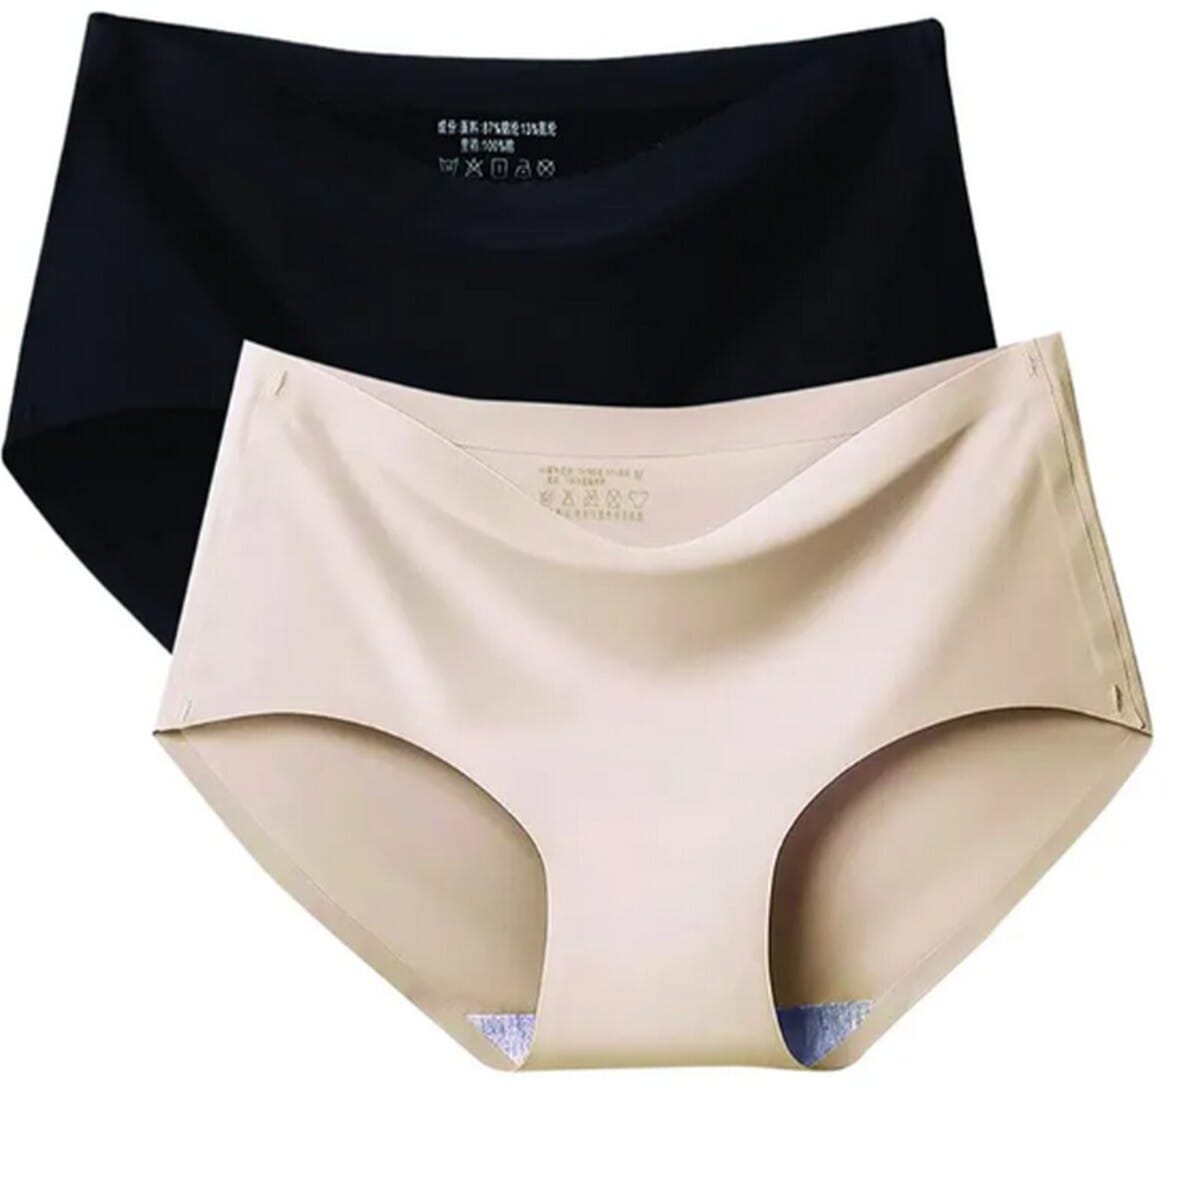 Aayomet Seamless Underwear for Women High Spring Comfort Ice Silk Panties  (Beige, XXXL) 